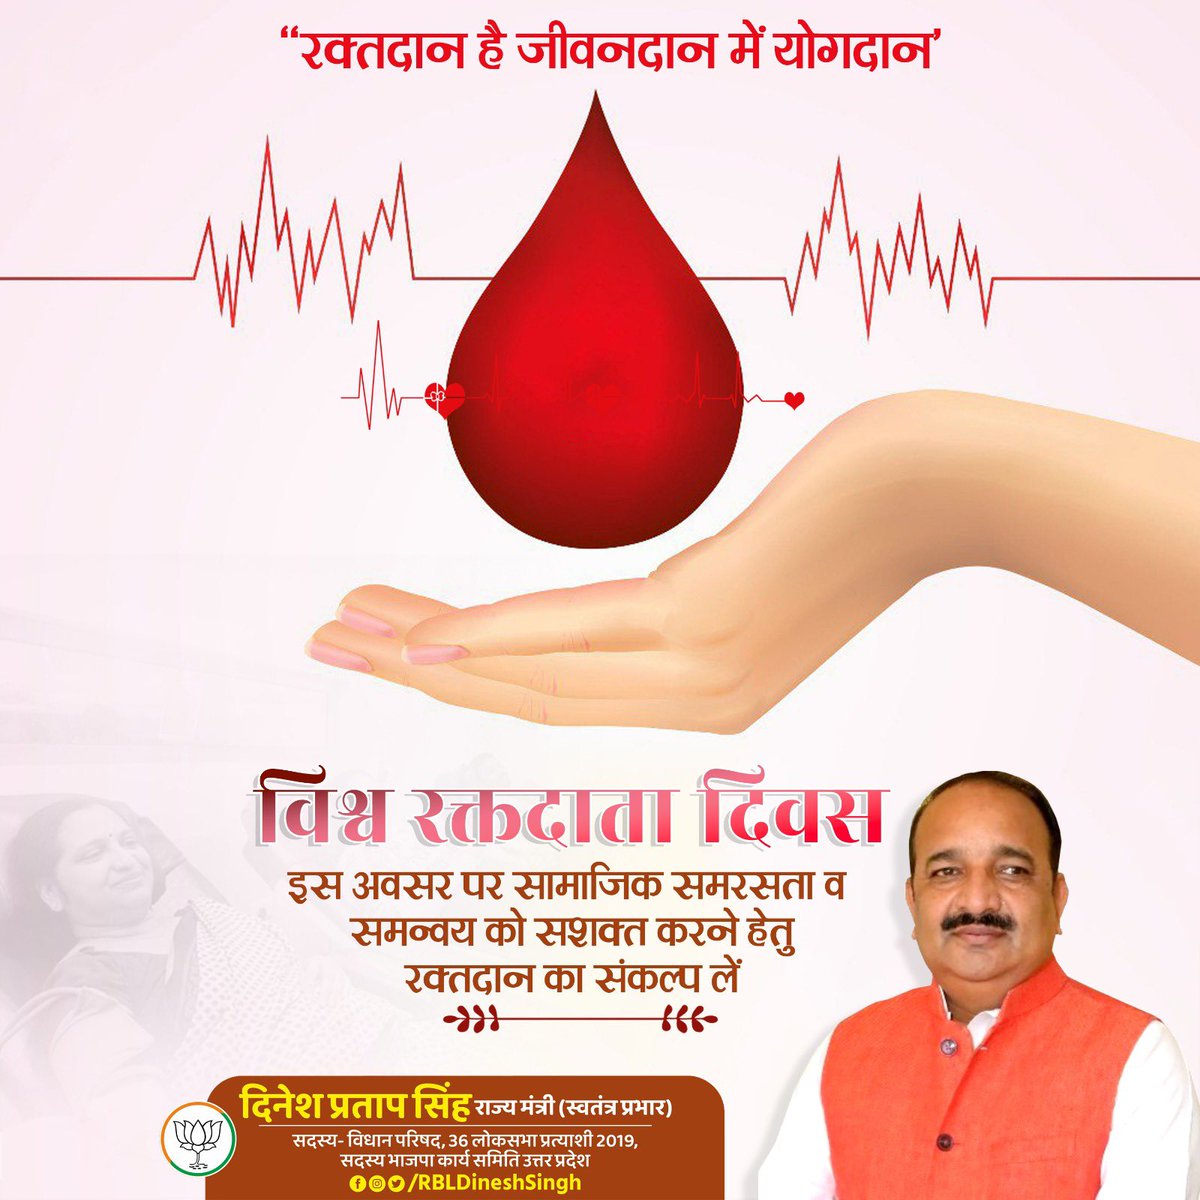 'रक्तदान आराधना, रक्तदान है धर्म
सब कर्मों में श्रेष्ठ है, यह परहित का कर्म'

विश्व रक्तदाता दिवस की आप सभी को हार्दिक शुभकामनाएं।
#BloodDonorDay